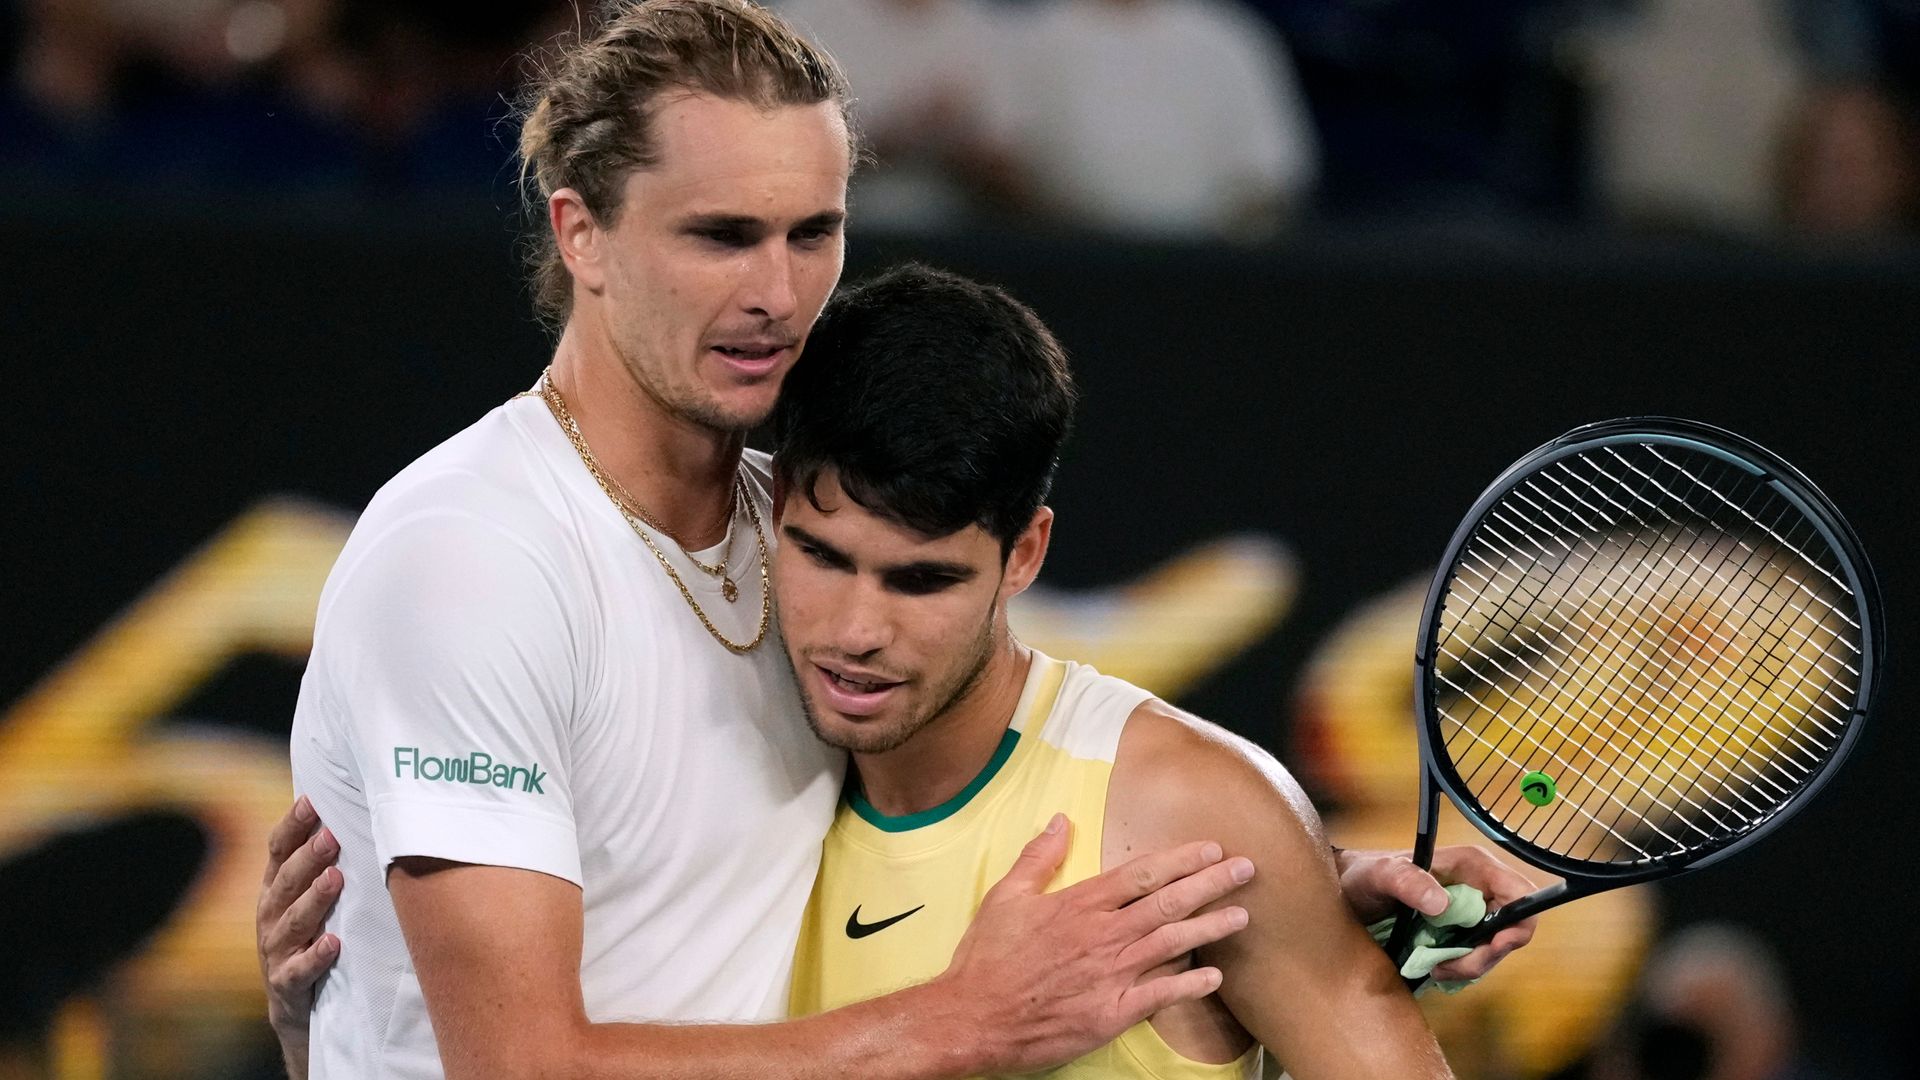 Australian Open: Alcaraz beaten by Zverev in four sets - as it happened